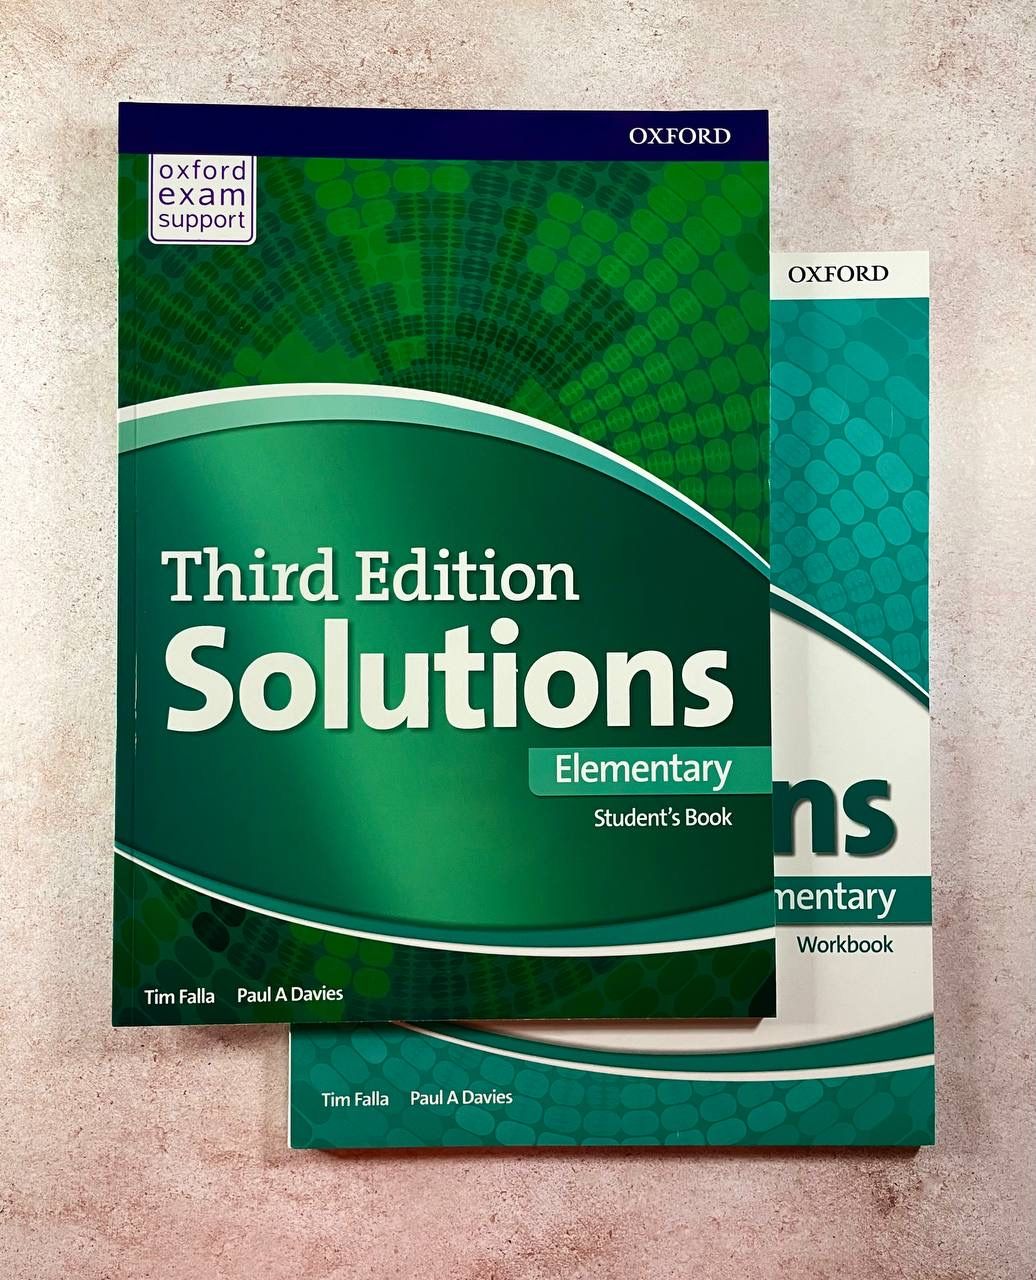 Solutions elementary 1. Учебник solutions Elementary. Учебники third Edition solutions Elementary Workbook. Solutions Elementary Workbook гдз. Solutions Elementary student's book.